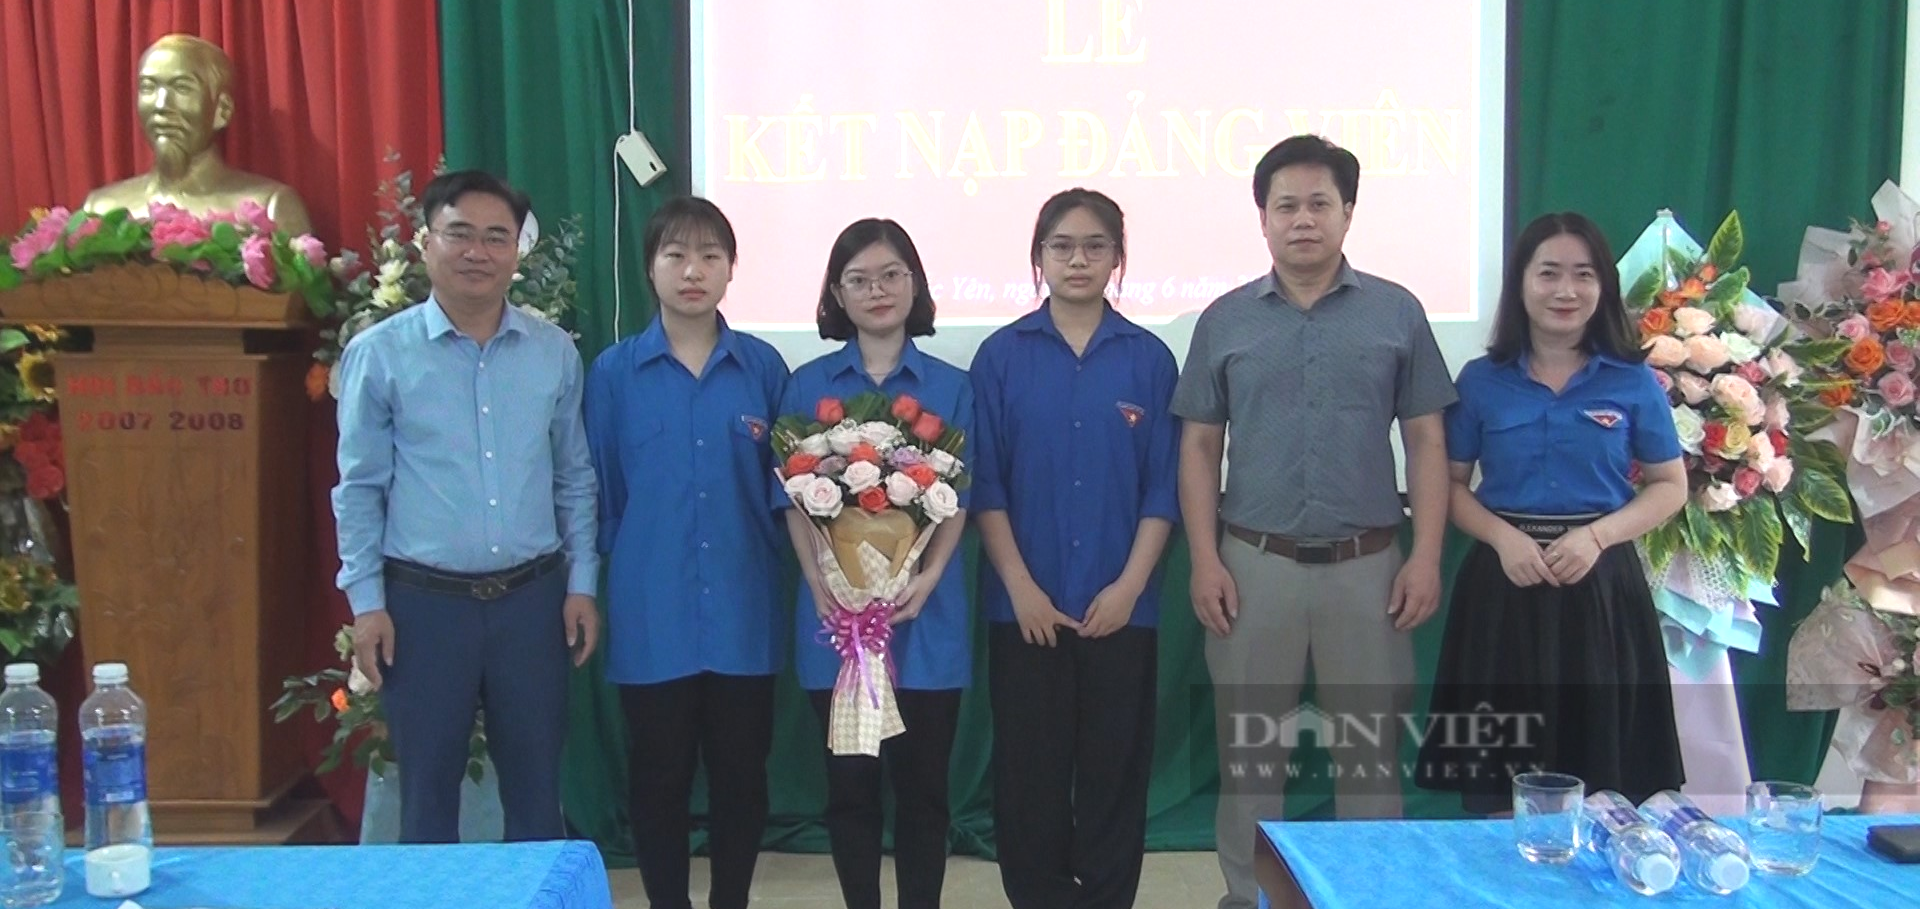 Học sinh THPT đầu tiên của huyện Bắc yên, tỉnh Sơn La được kết nạp Đảng - Ảnh 2.